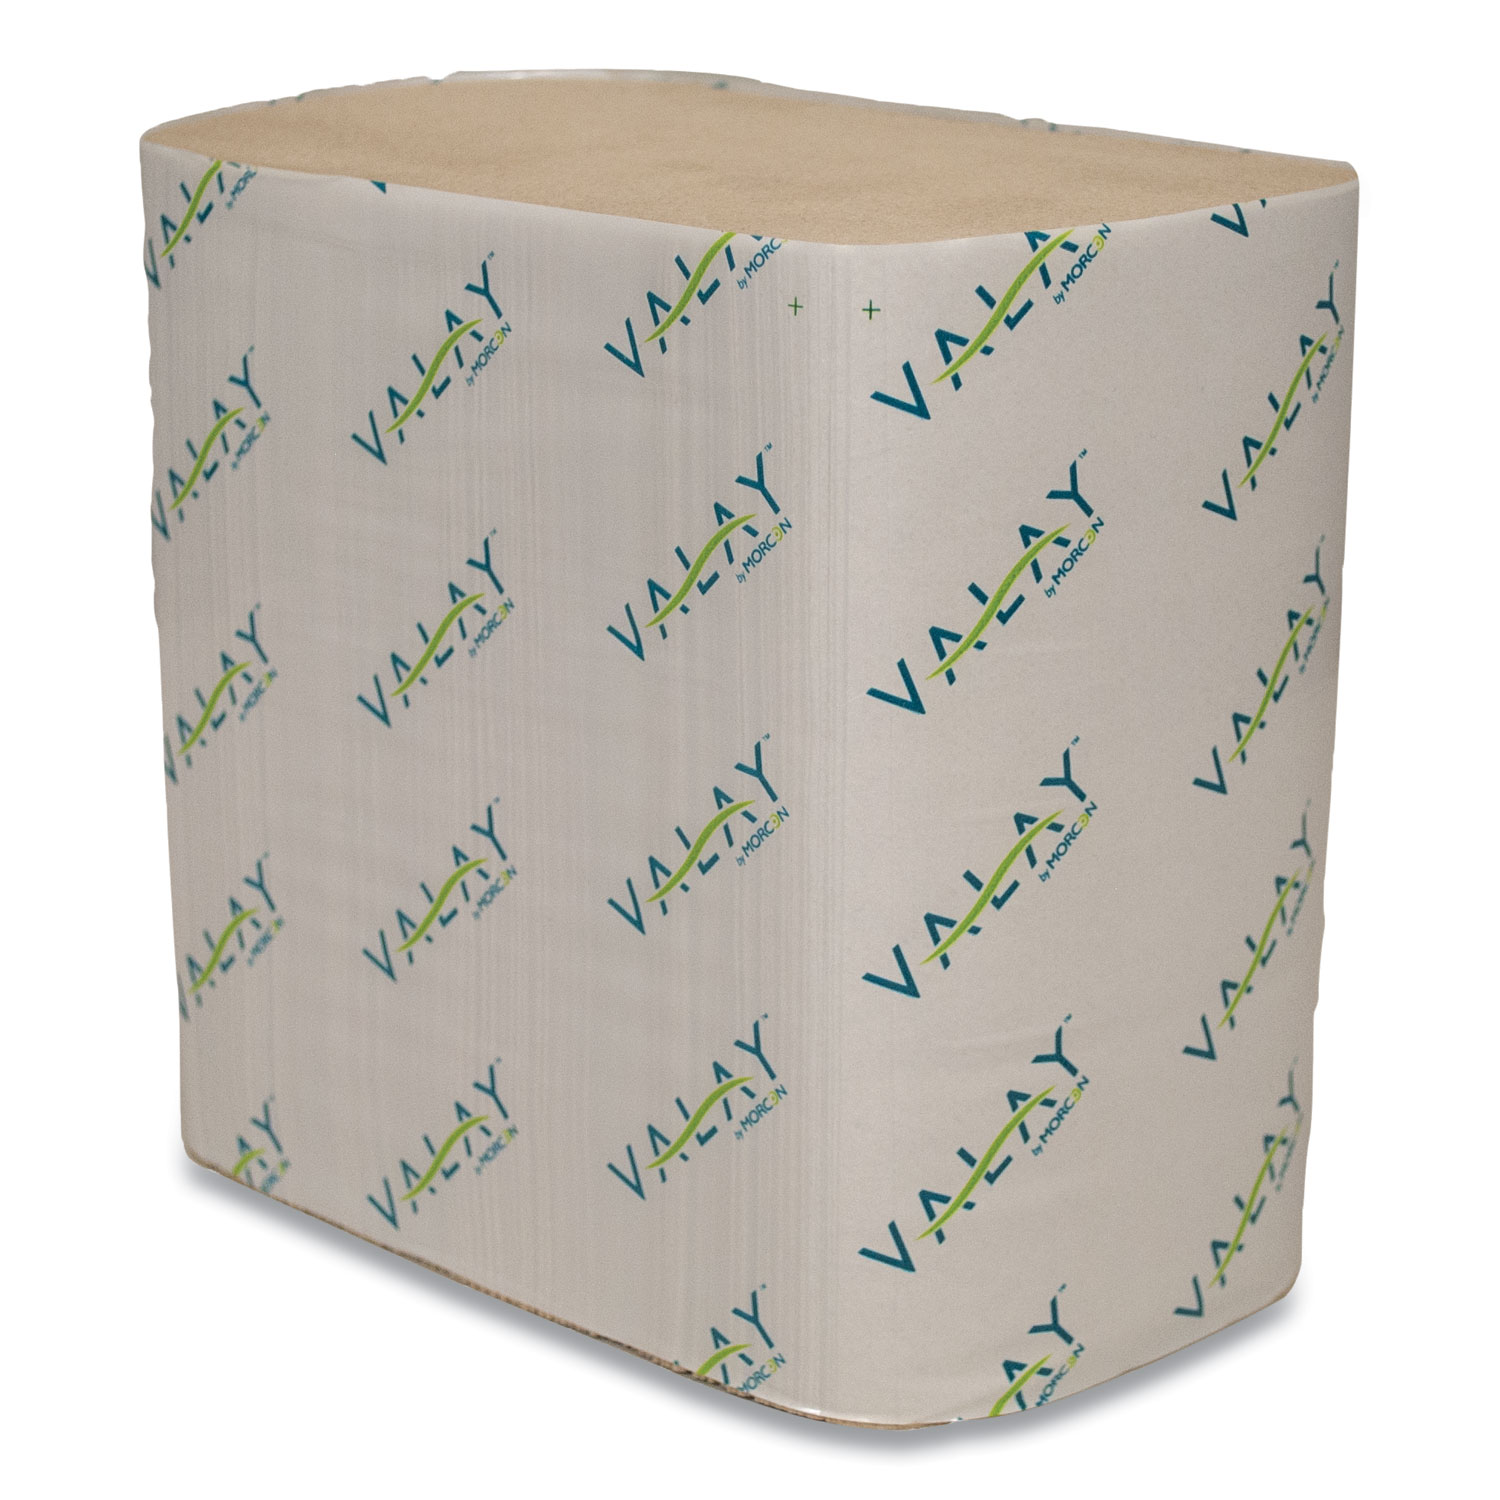  Morcon Tissue 5050VN Valay Interfolded Napkins, 1-Ply, 6.3 x 8.85, Kraft, 6,000/Carton (MOR5050VN) 